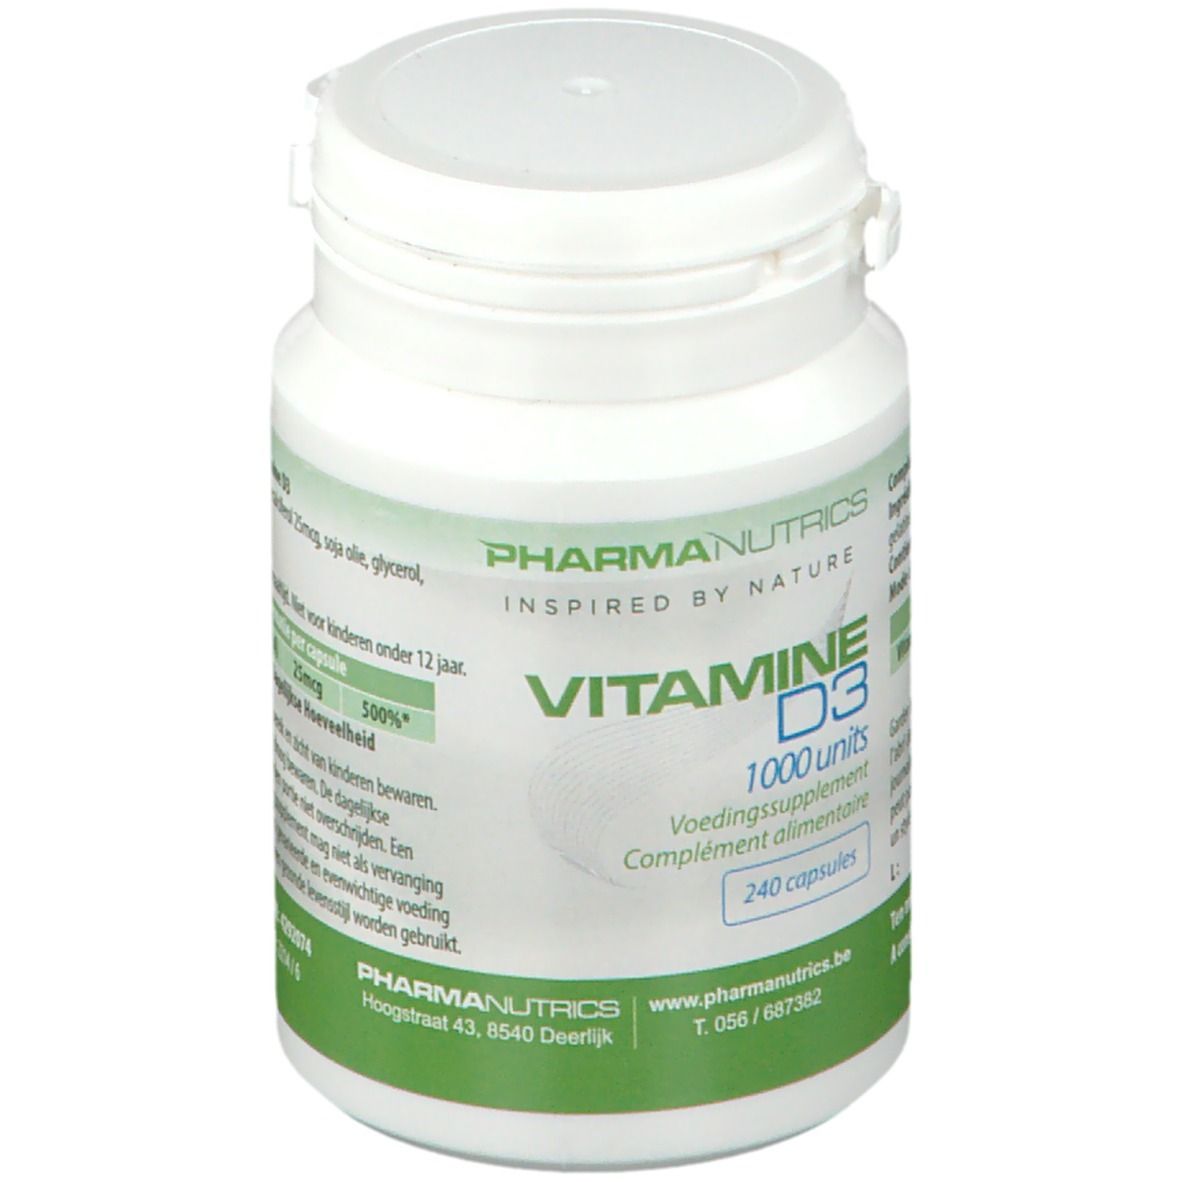 PharmaNutrics Vitamine D3